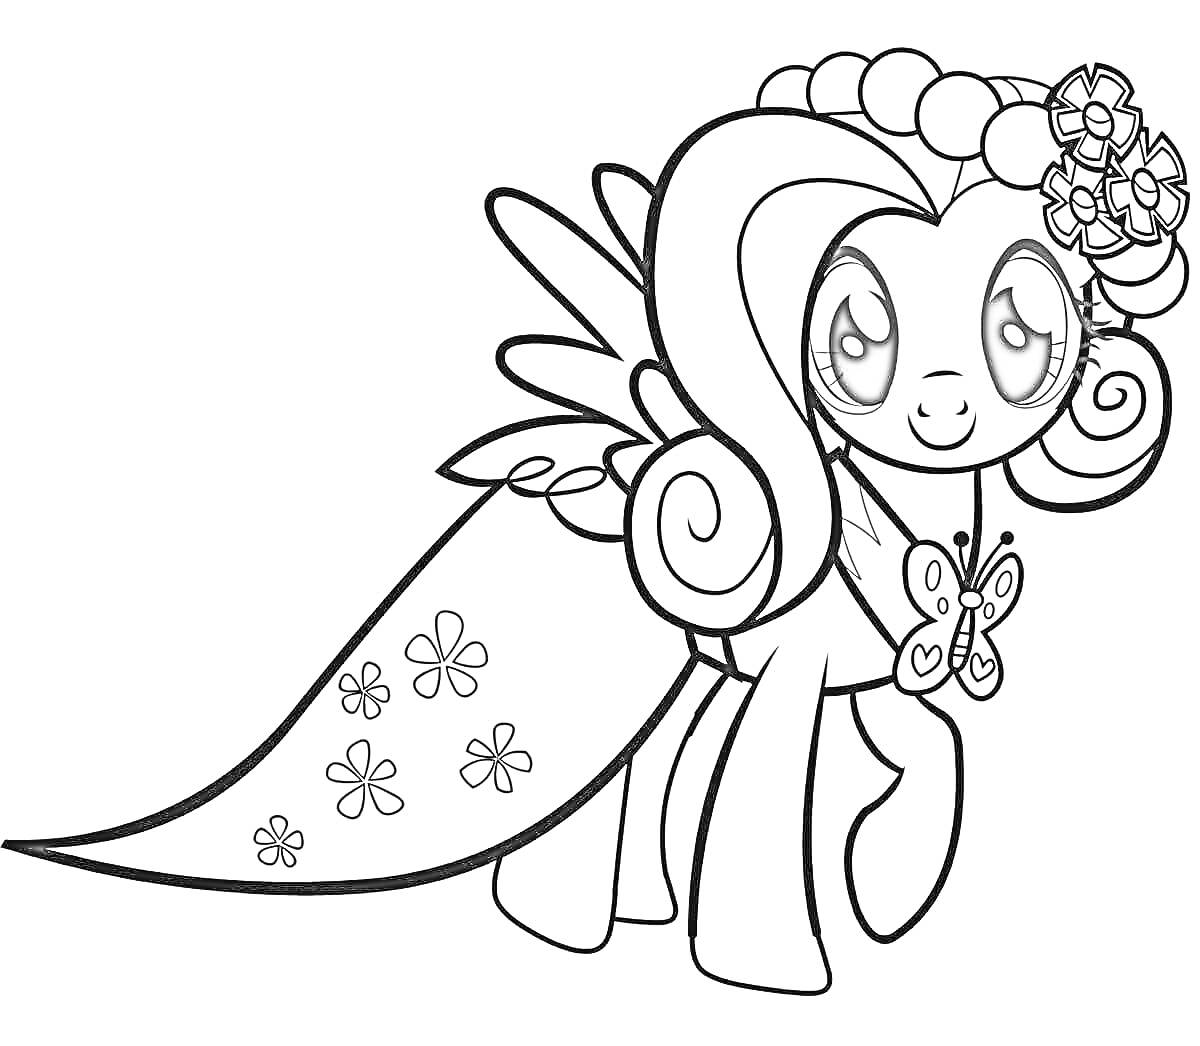 Раскраска Пони с крыльями, цветочным венком на голове, бабочкой на шее и цветами на хвосте